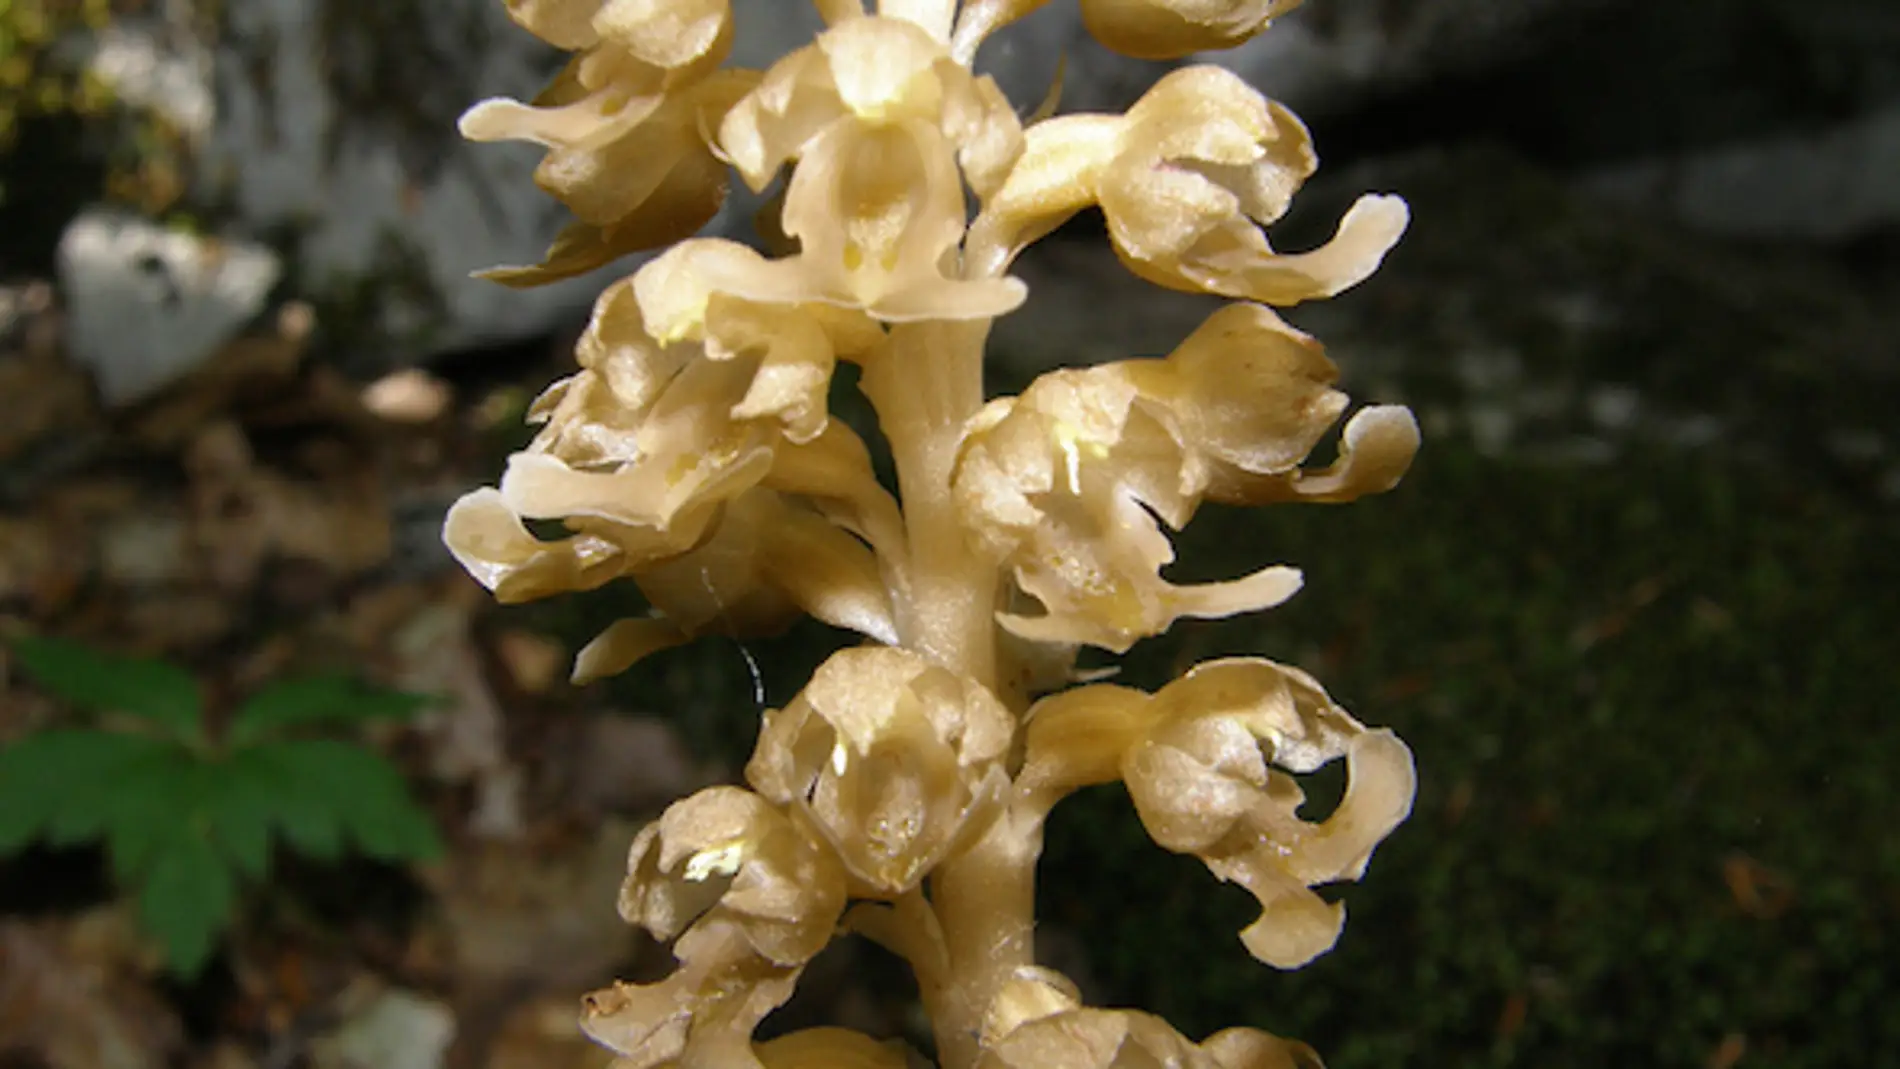 La orquídea Neottia nidus-avis obtiene su alimento a partir de hongos del suelo